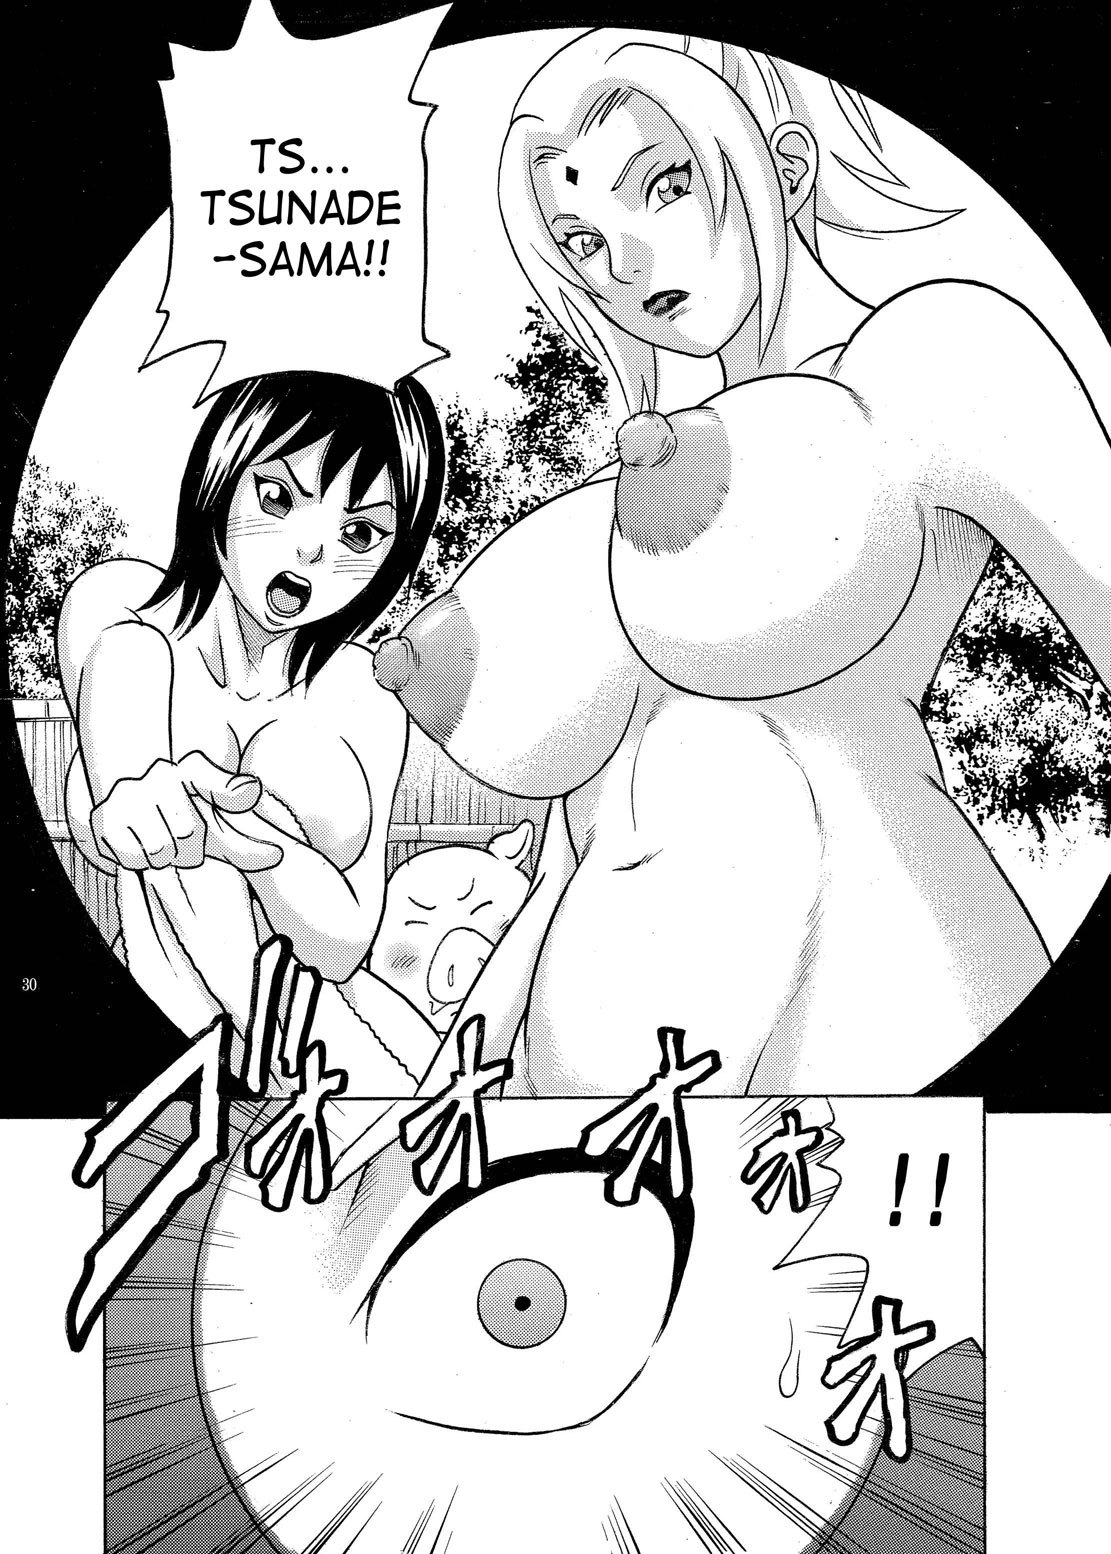 PM 9 - Indecent Ninja Exam naruto 26 hentai manga